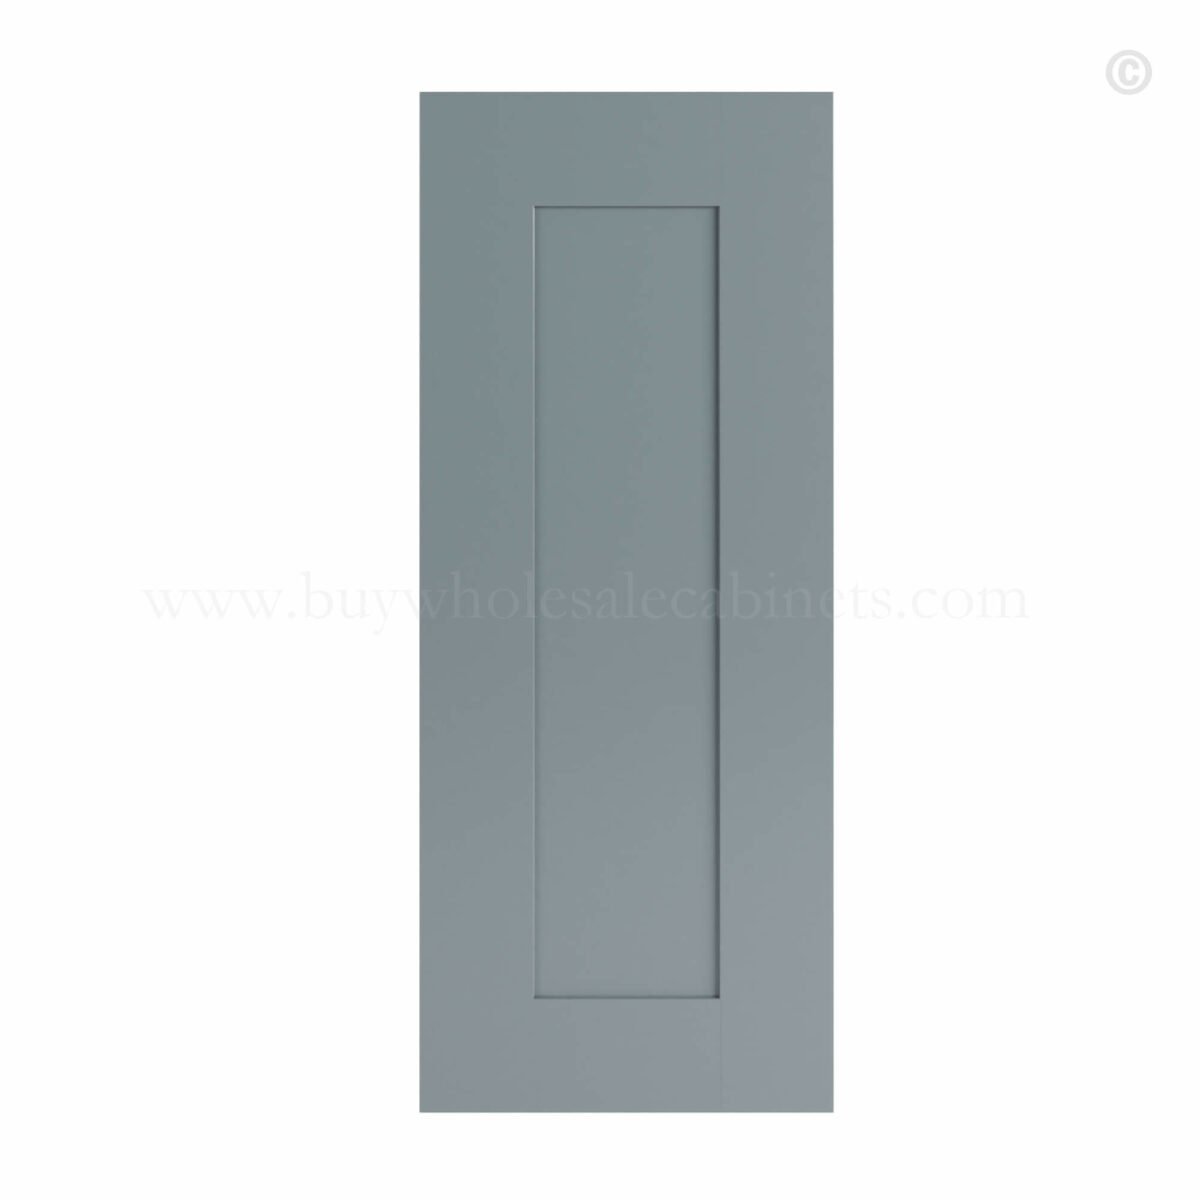 Gray Shaker Wall Decorative Door Panel